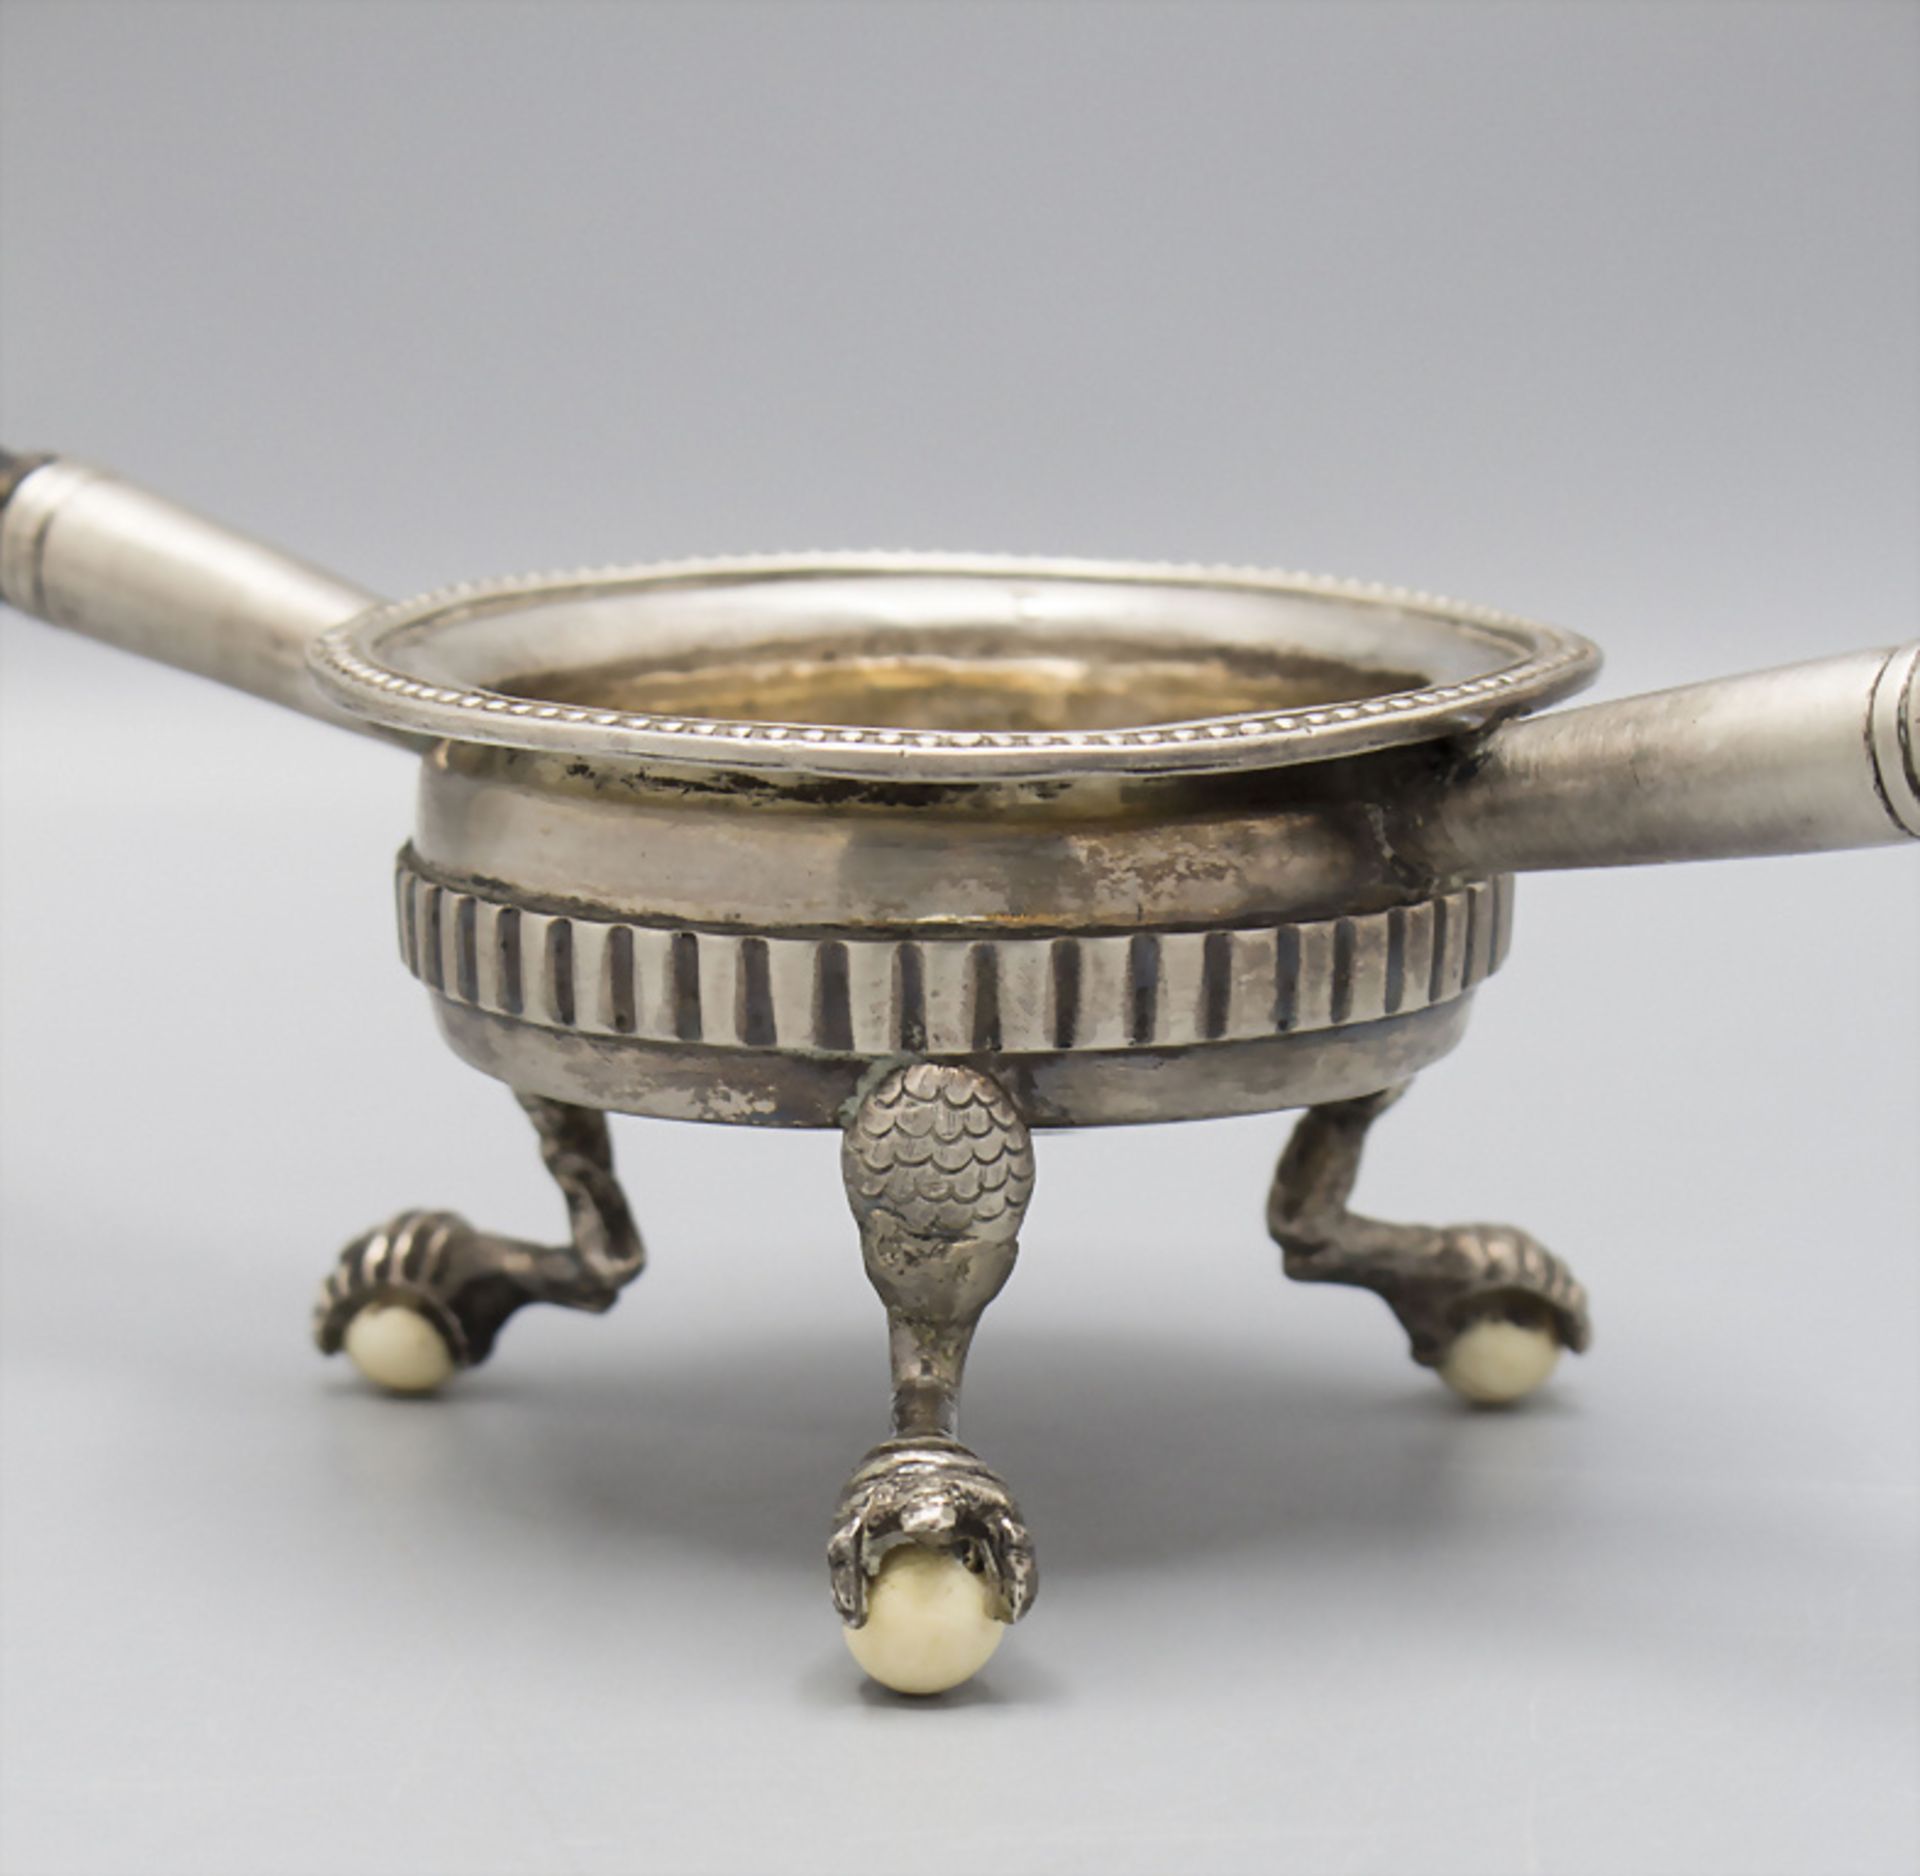 Gewürzschale mit zwei Handhaben / A silver bowl with handles, wohl Südamerika, 19. Jh. - Image 2 of 3